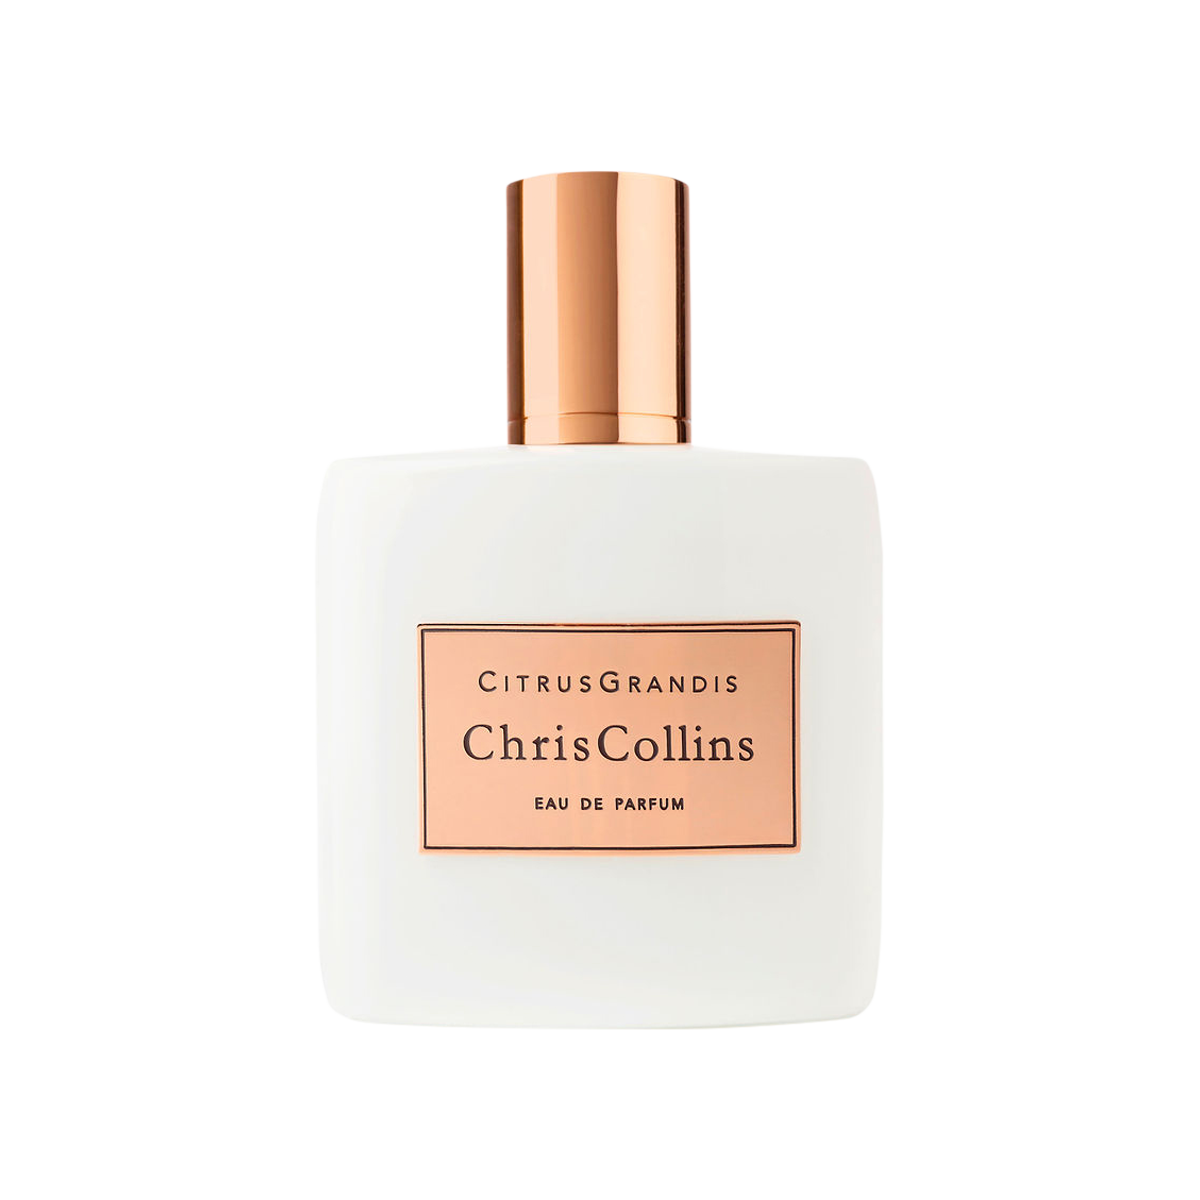 Chris Collins - Citrus Grandis Eau de Parfum